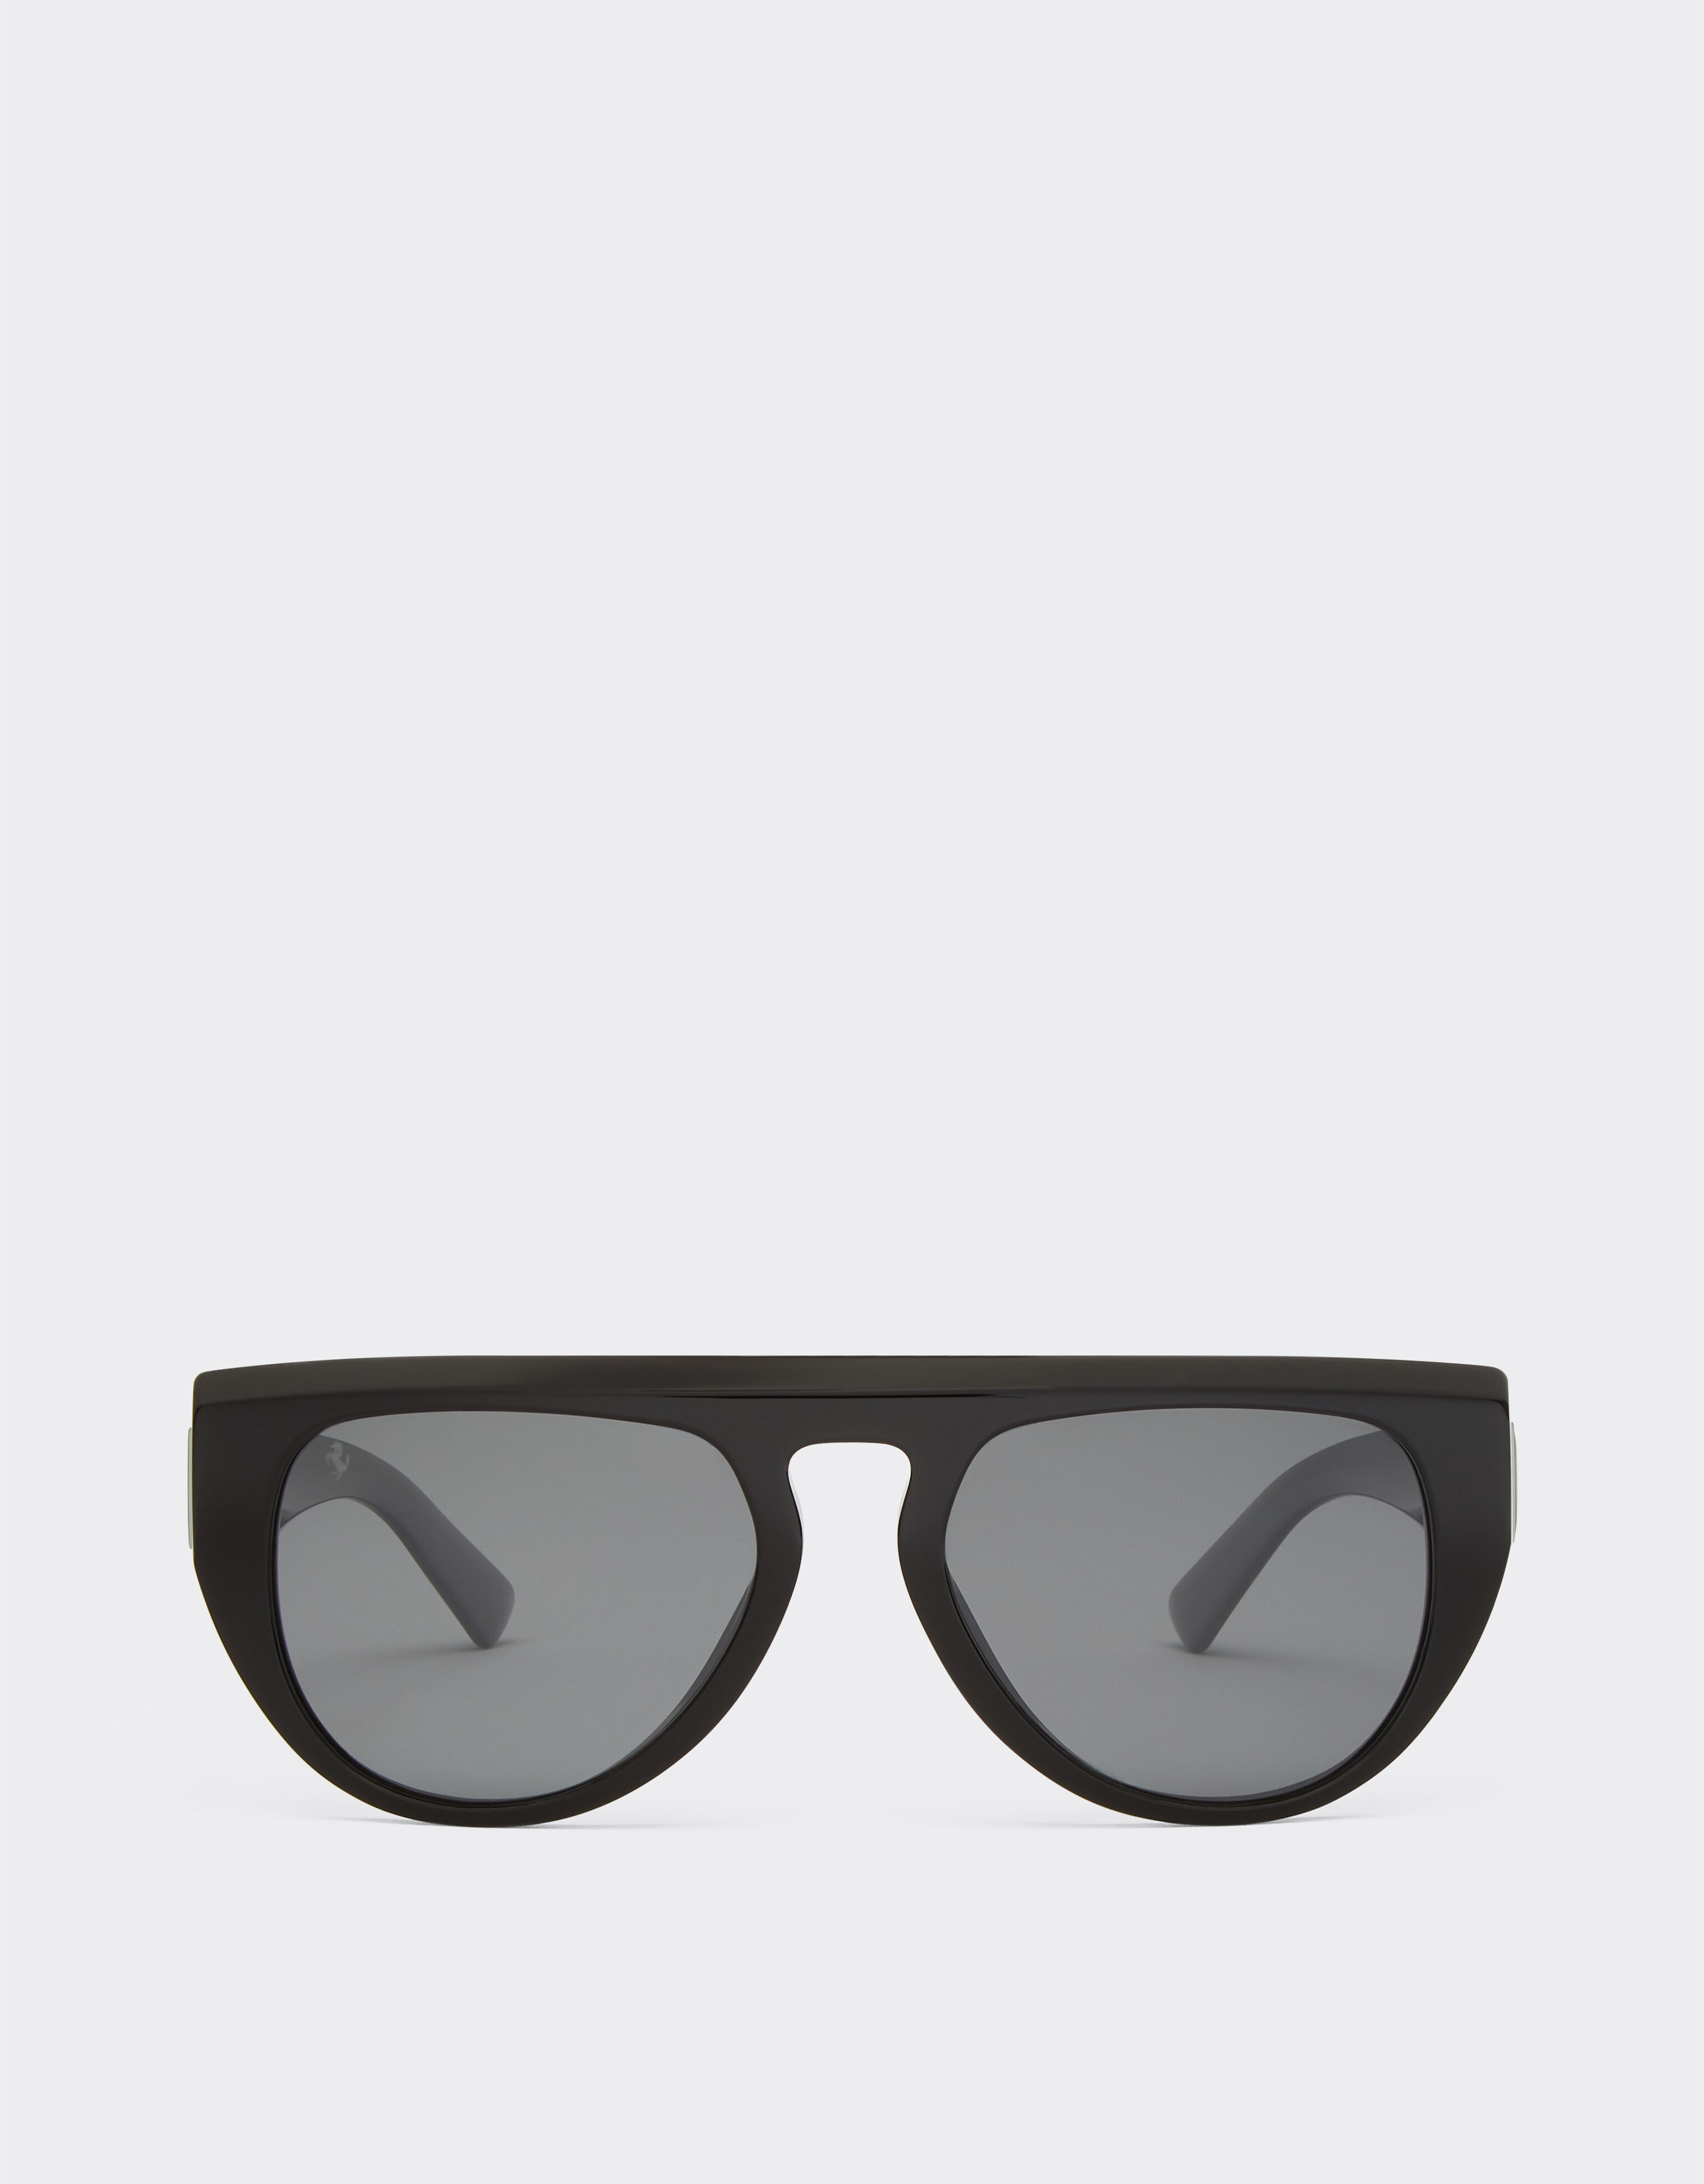 Ferrari Ferrari sunglasses in black acetate with polarised mirror lenses Ingrid 20684f